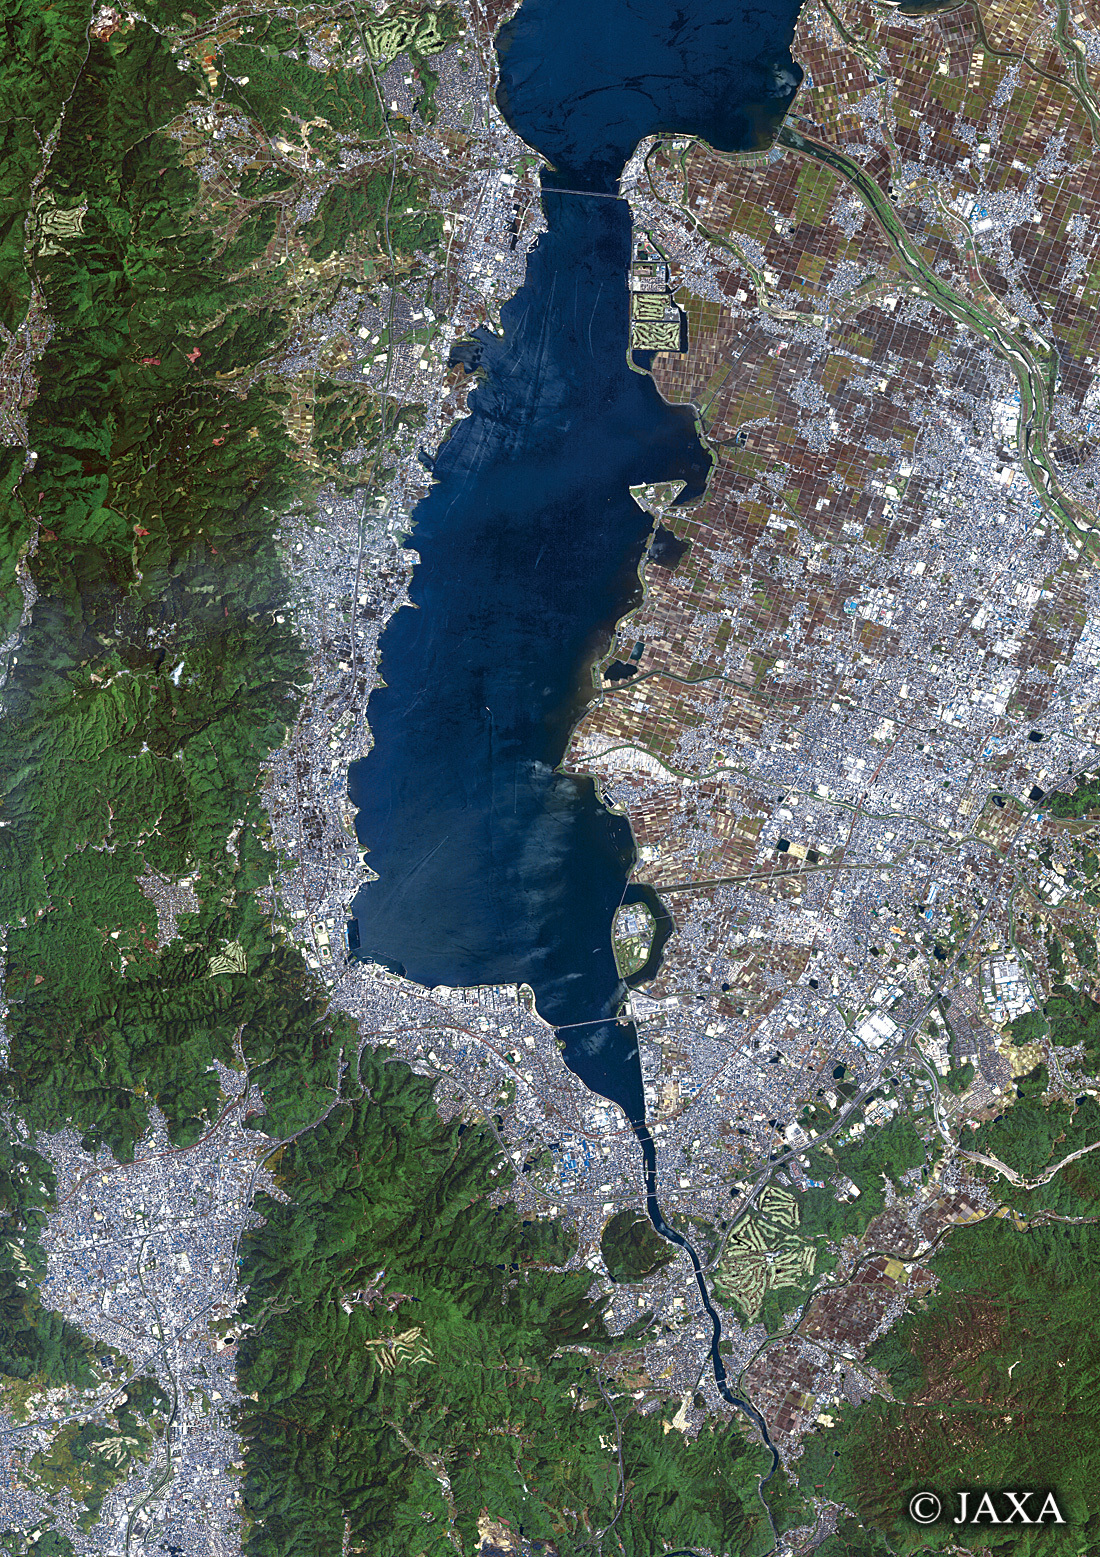 だいちから見た日本の都市 大津市・草津周辺:衛星画像